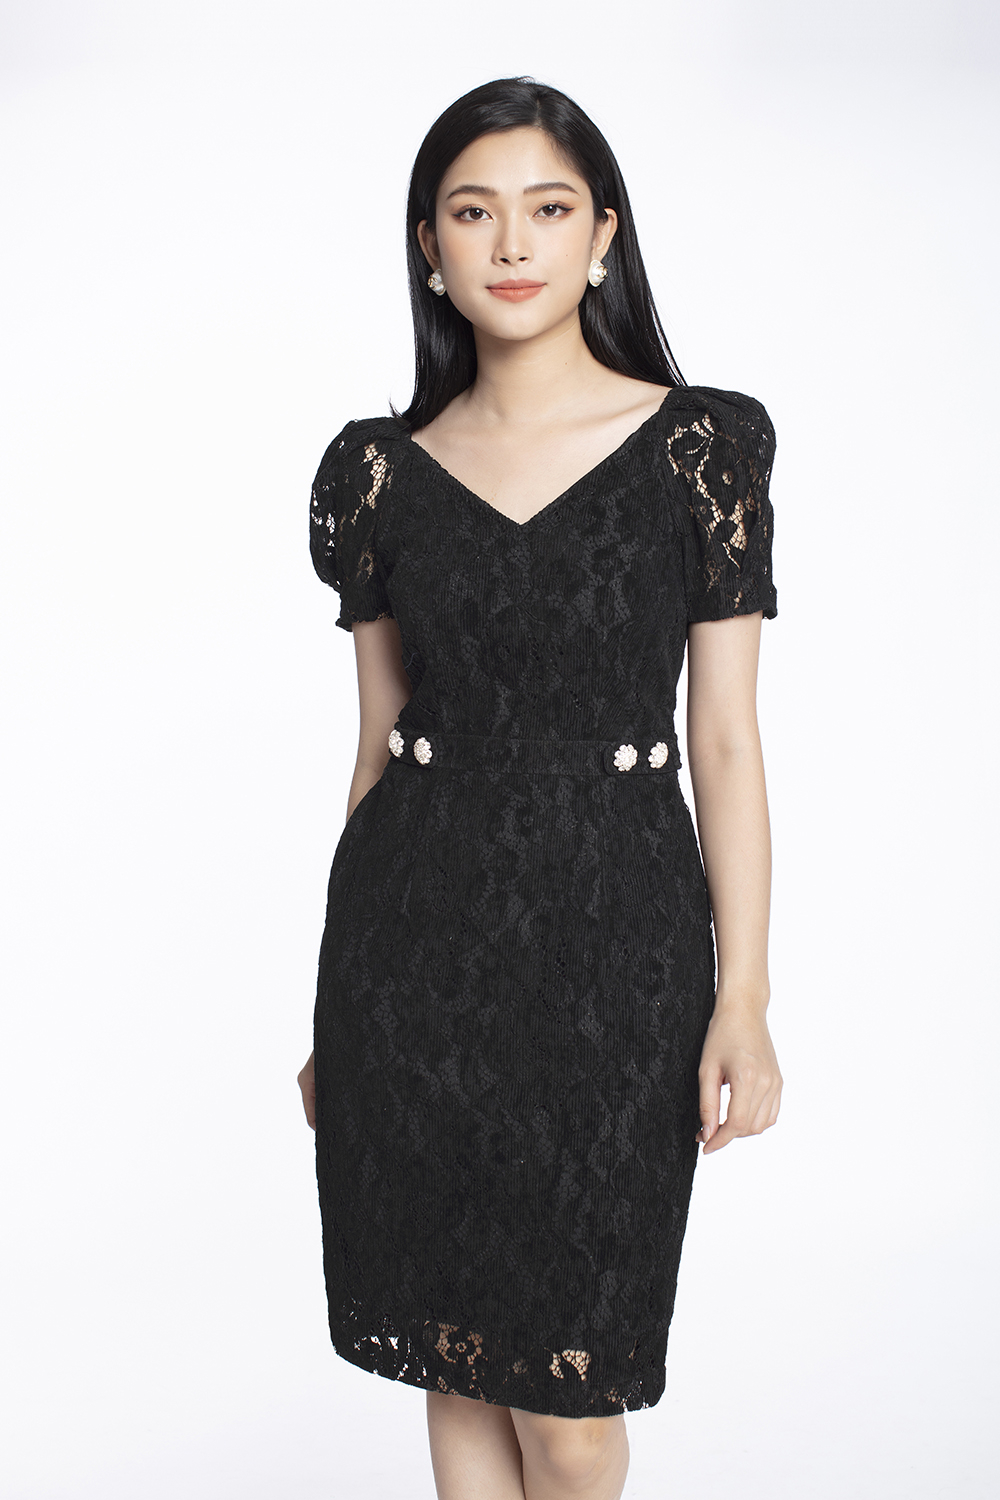 Đầm ren dáng xòe tay con KK102-18 | Thời trang công sở K&K Fashion